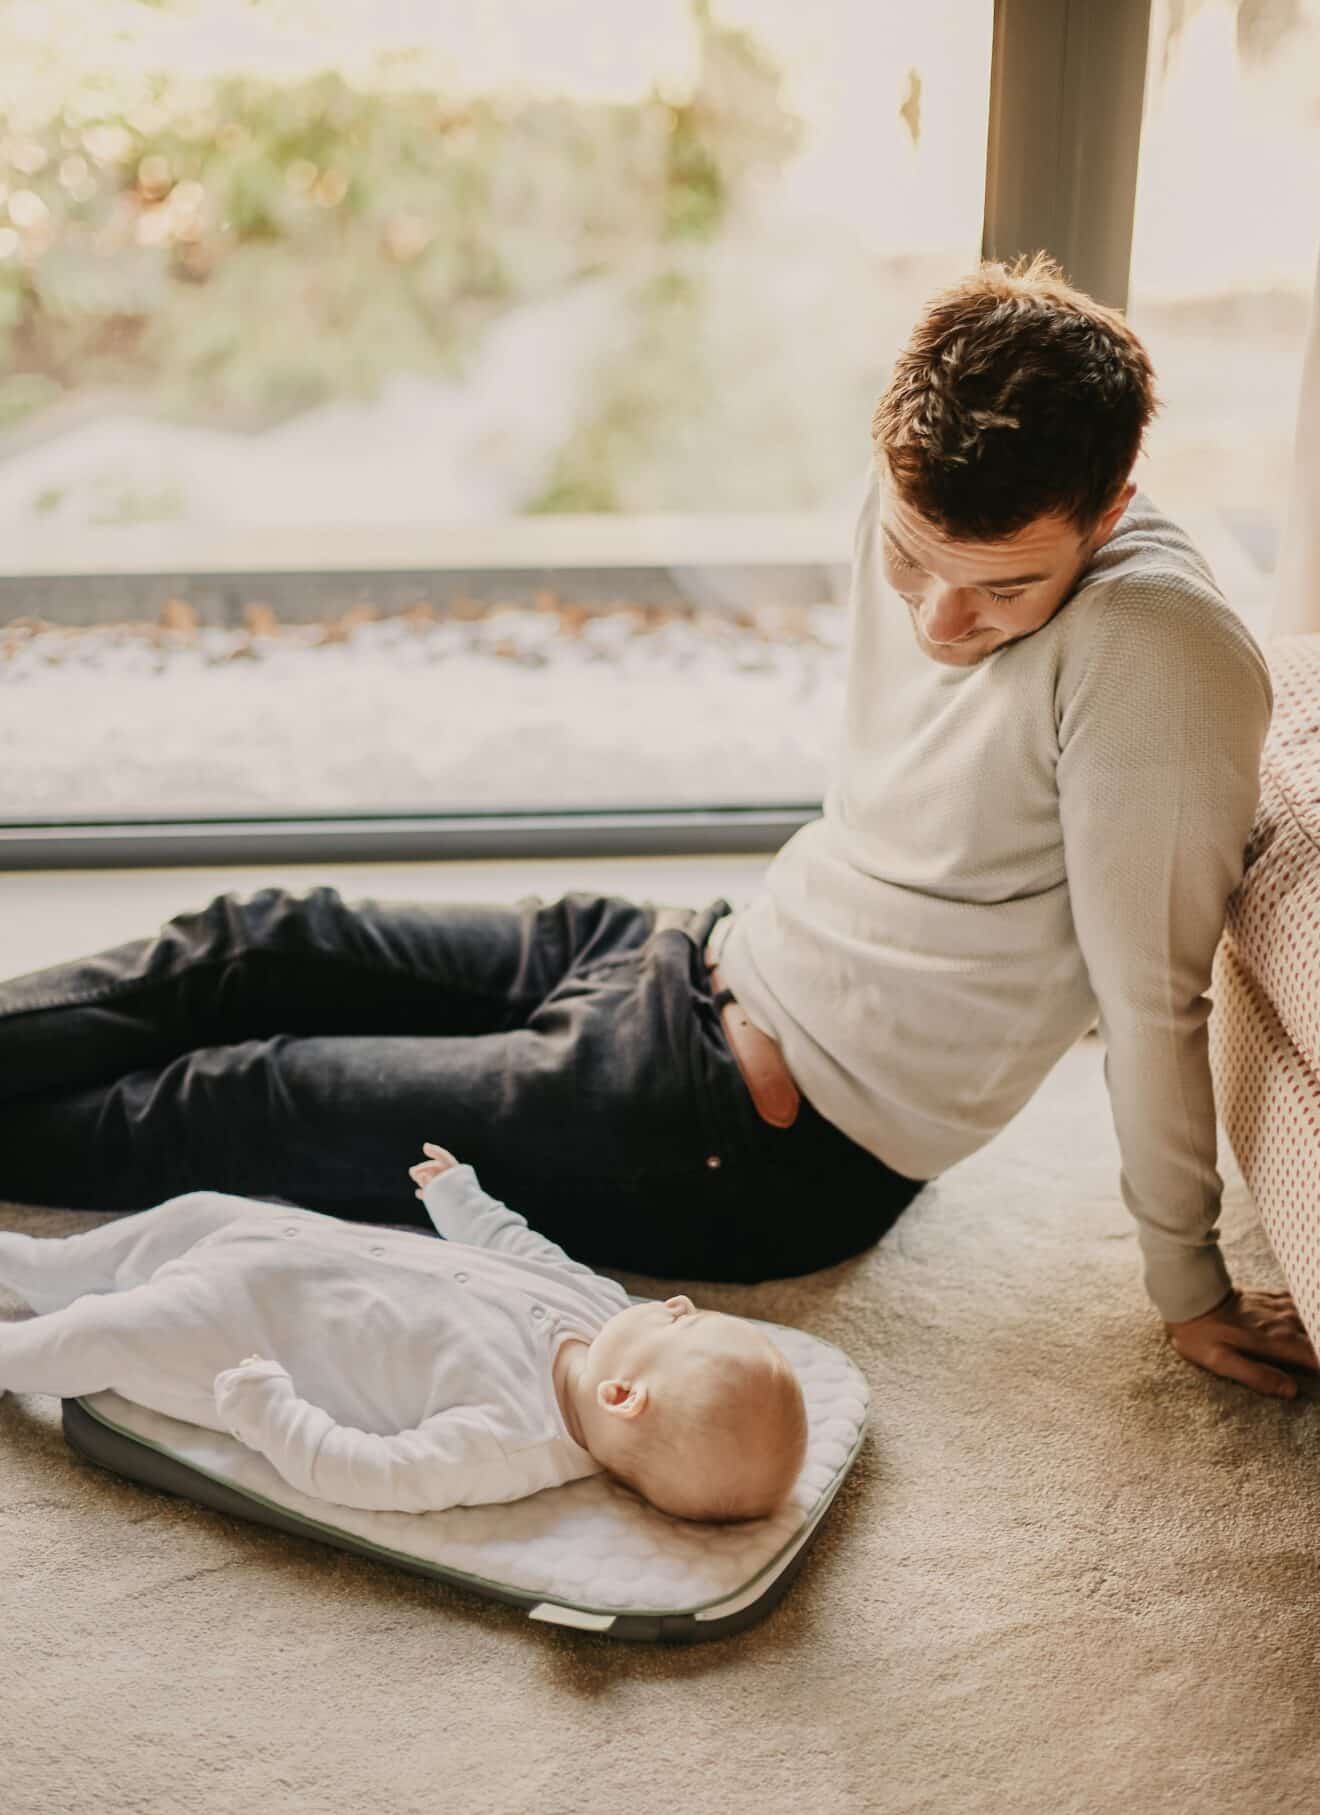 Préparation mentale à la paternité : une préoccupation pour les pères en devenir